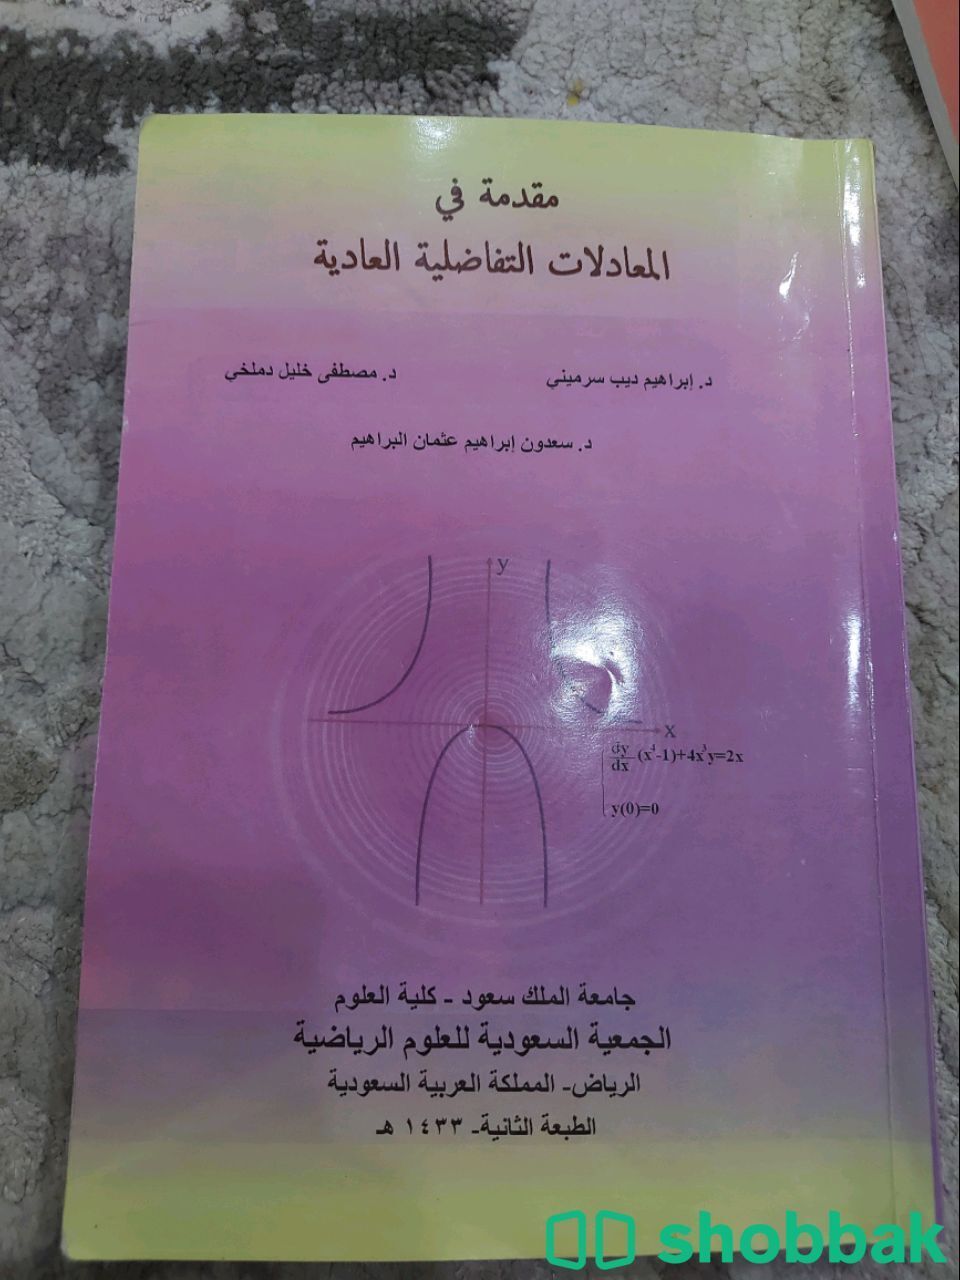 مجموعة كتب قديمة اغلبها لجامعة الملك سعود Shobbak Saudi Arabia